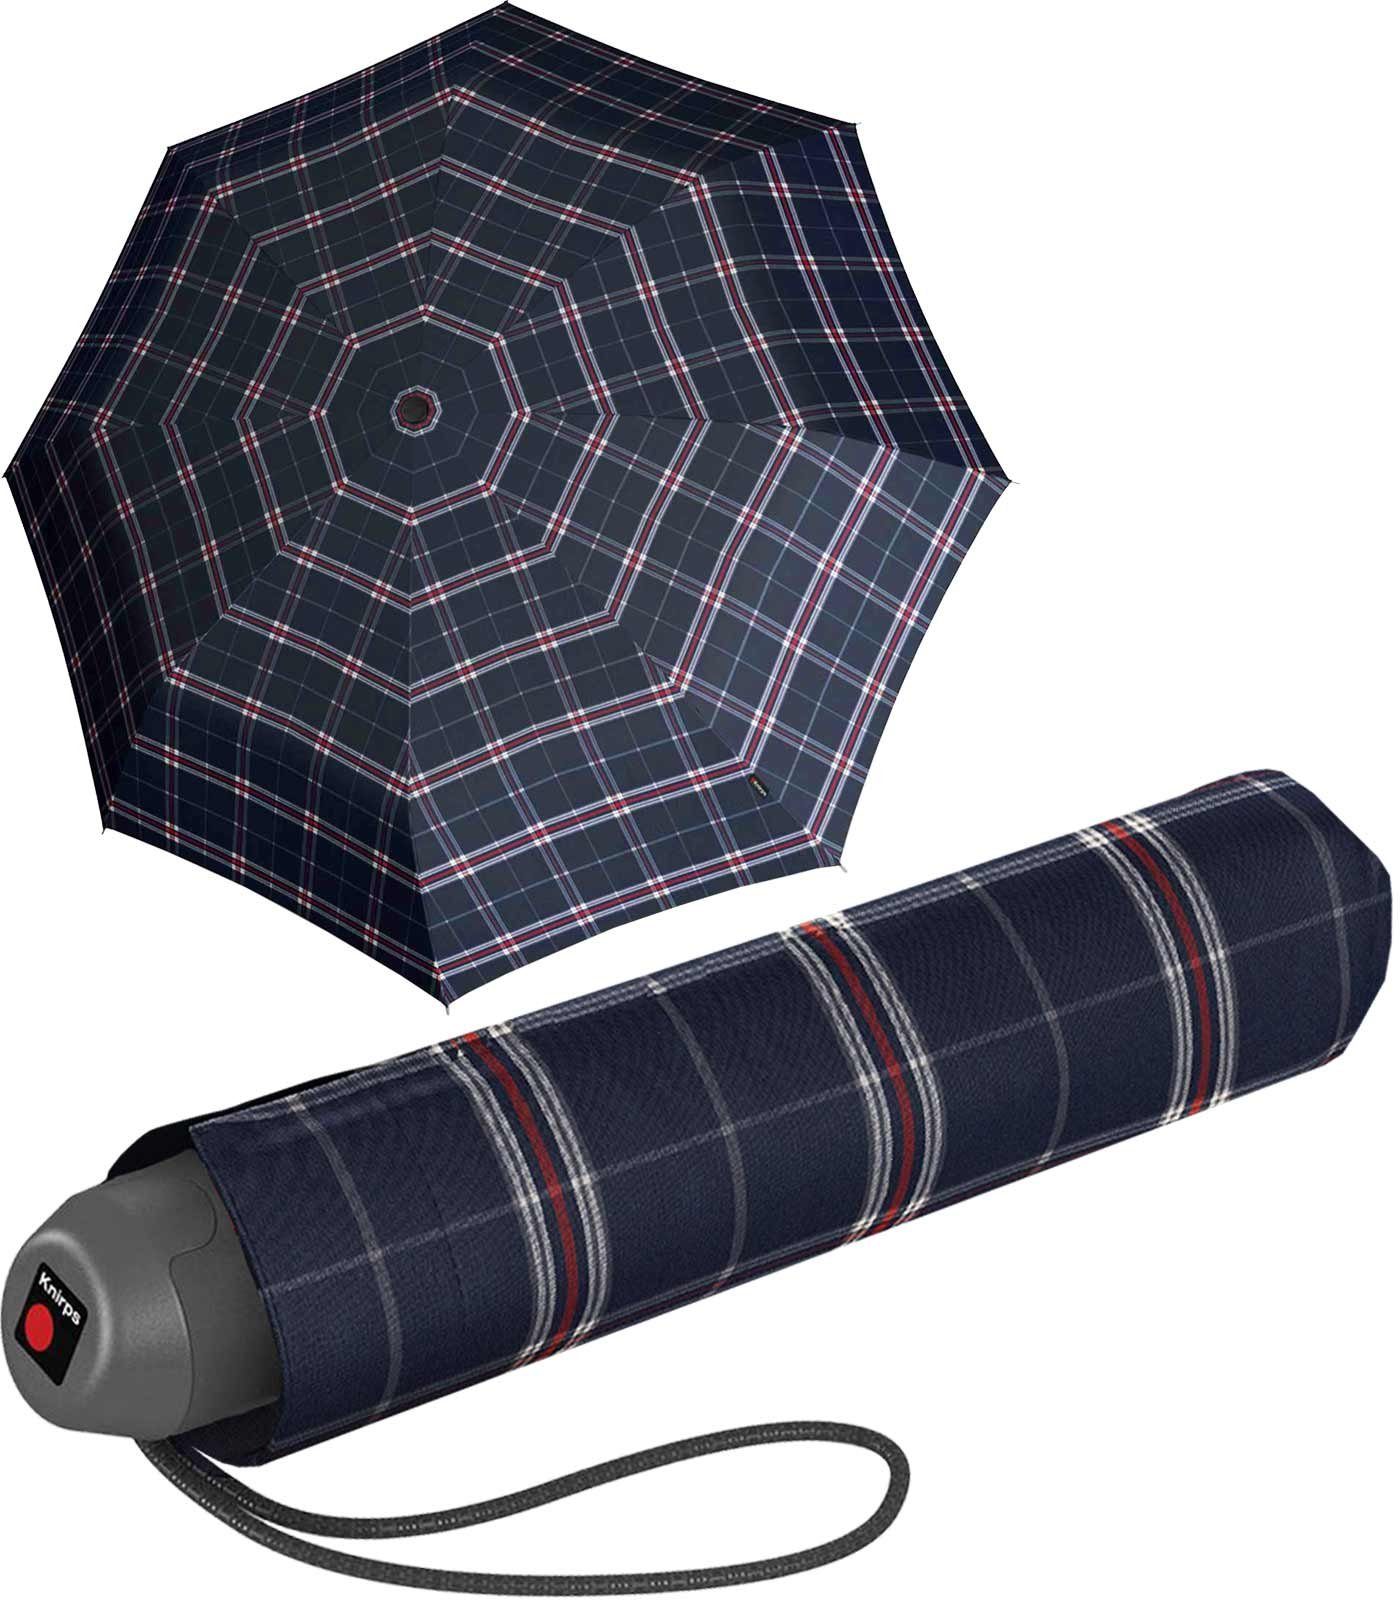 Schirm, kleiner Taschenschirm den Check für leichte manueller der Alltag Taschenregenschirm Knirps® E.051 navy-bordeaux-weiß navy